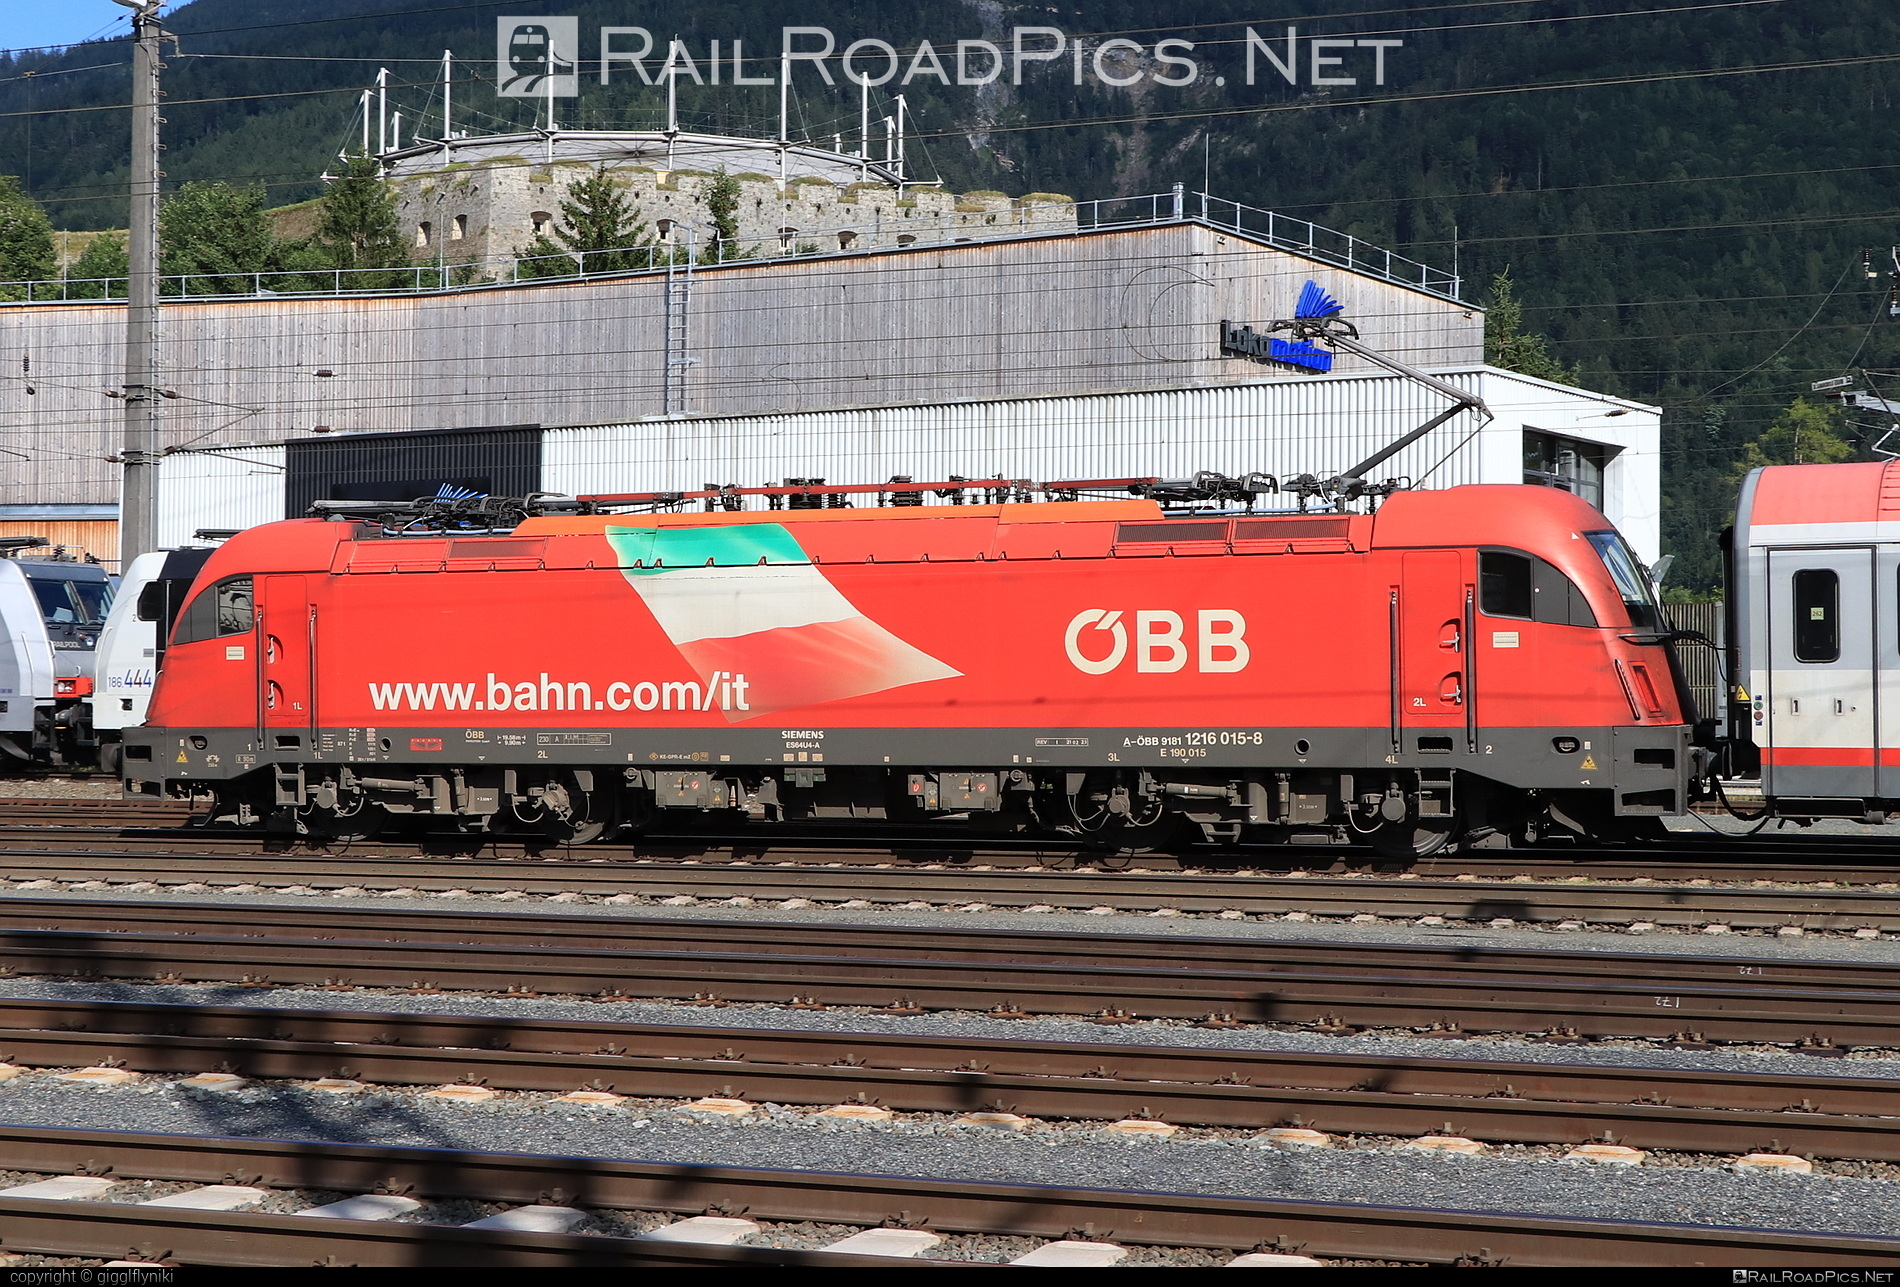 Siemens ES 64 U4 - 1216 015 operated by Österreichische Bundesbahnen #es64 #es64u4 #eurosprinter #obb #osterreichischebundesbahnen #siemens #siemensEs64 #siemensEs64u4 #siemenstaurus #taurus #tauruslocomotive